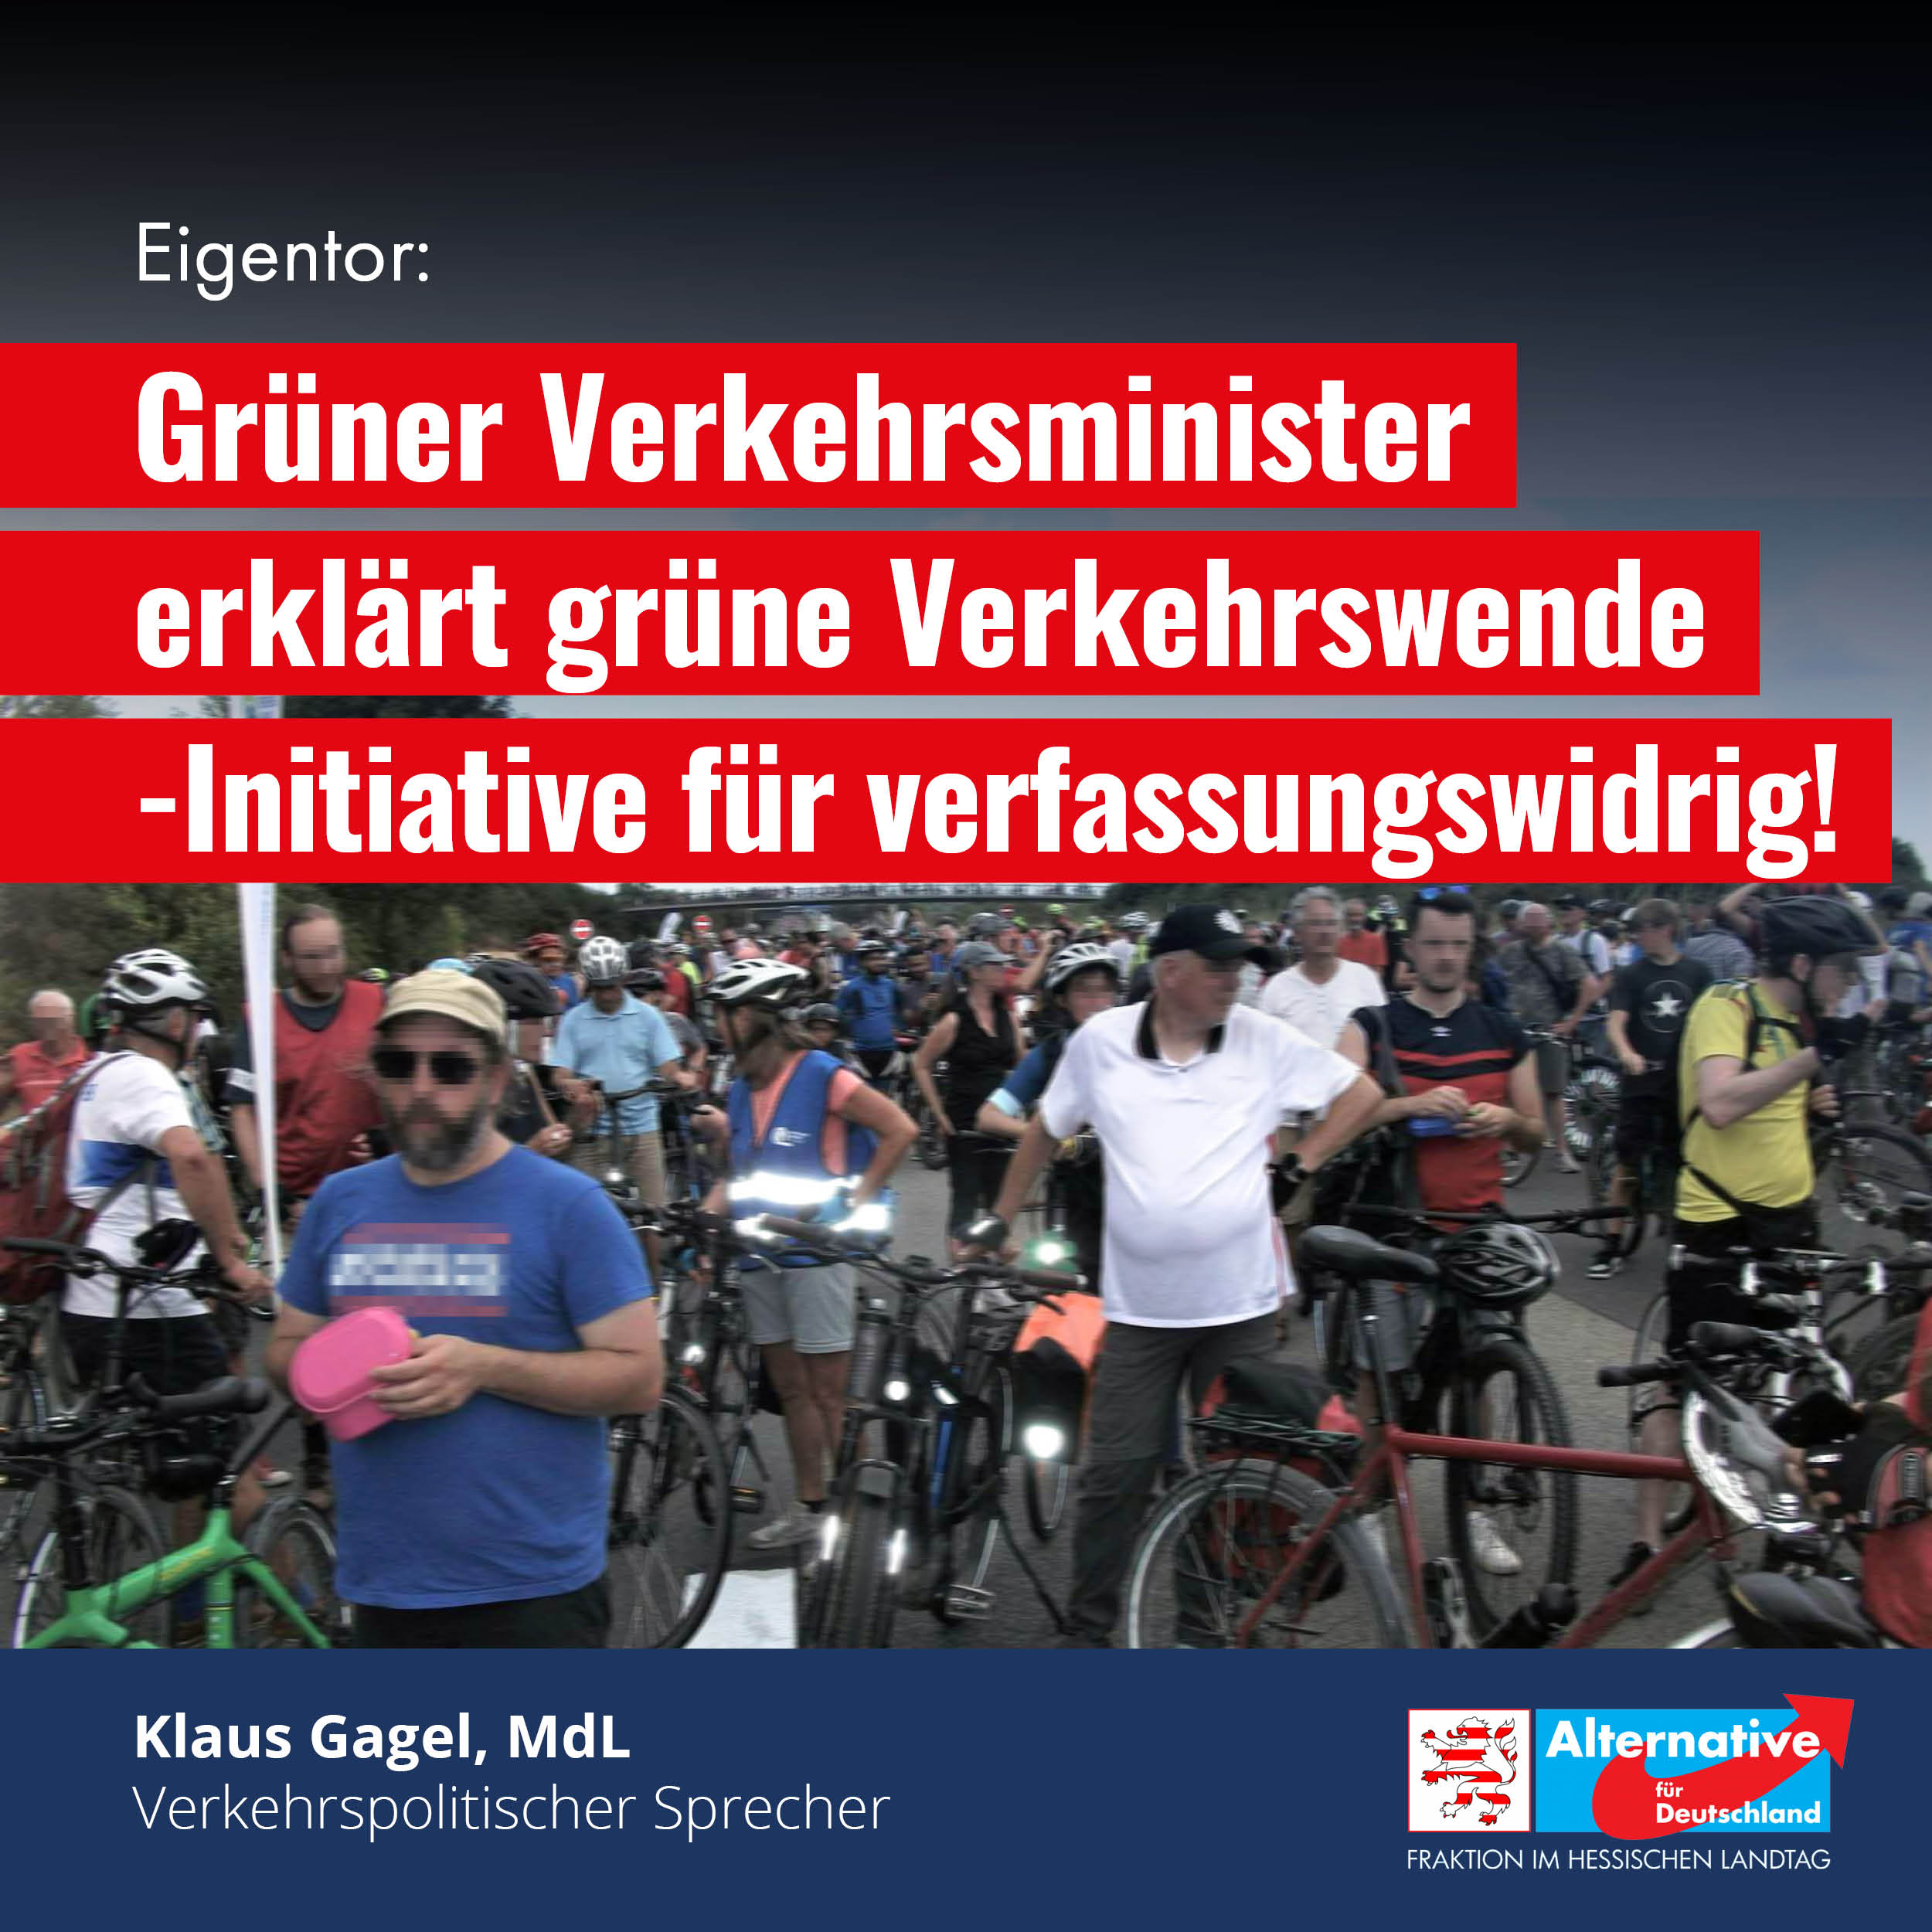 You are currently viewing Grüner Verkehrsminister erklärt grüne Verkehrswende-Initiative für verfassungswidrig!